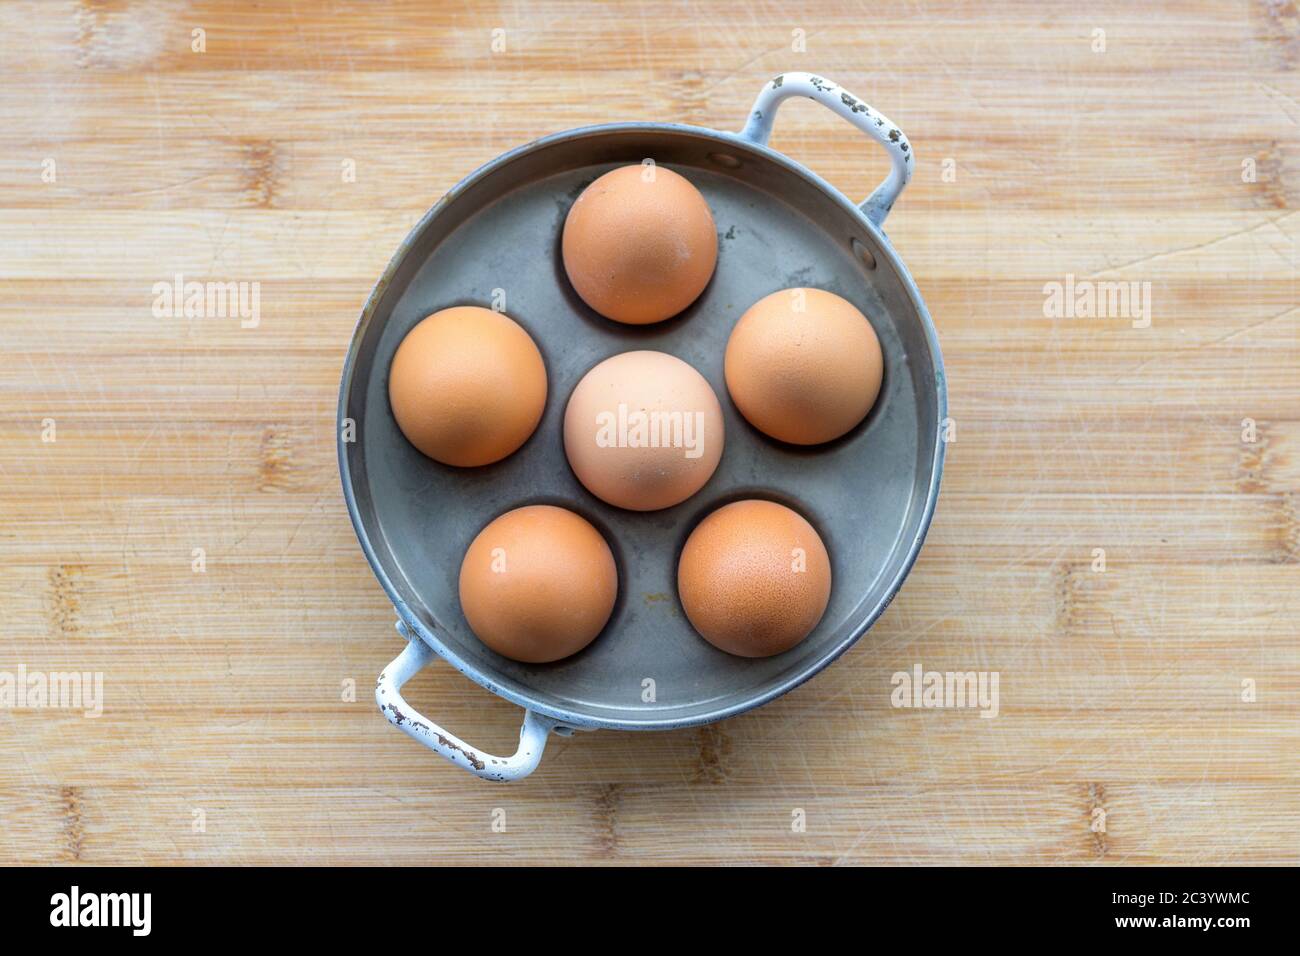 Seis huevos de gallina marrón fresca en una olla de metal o un cochero de huevo visto desde arriba en una mesa de madera con copyspace colocado en el centro Foto de stock